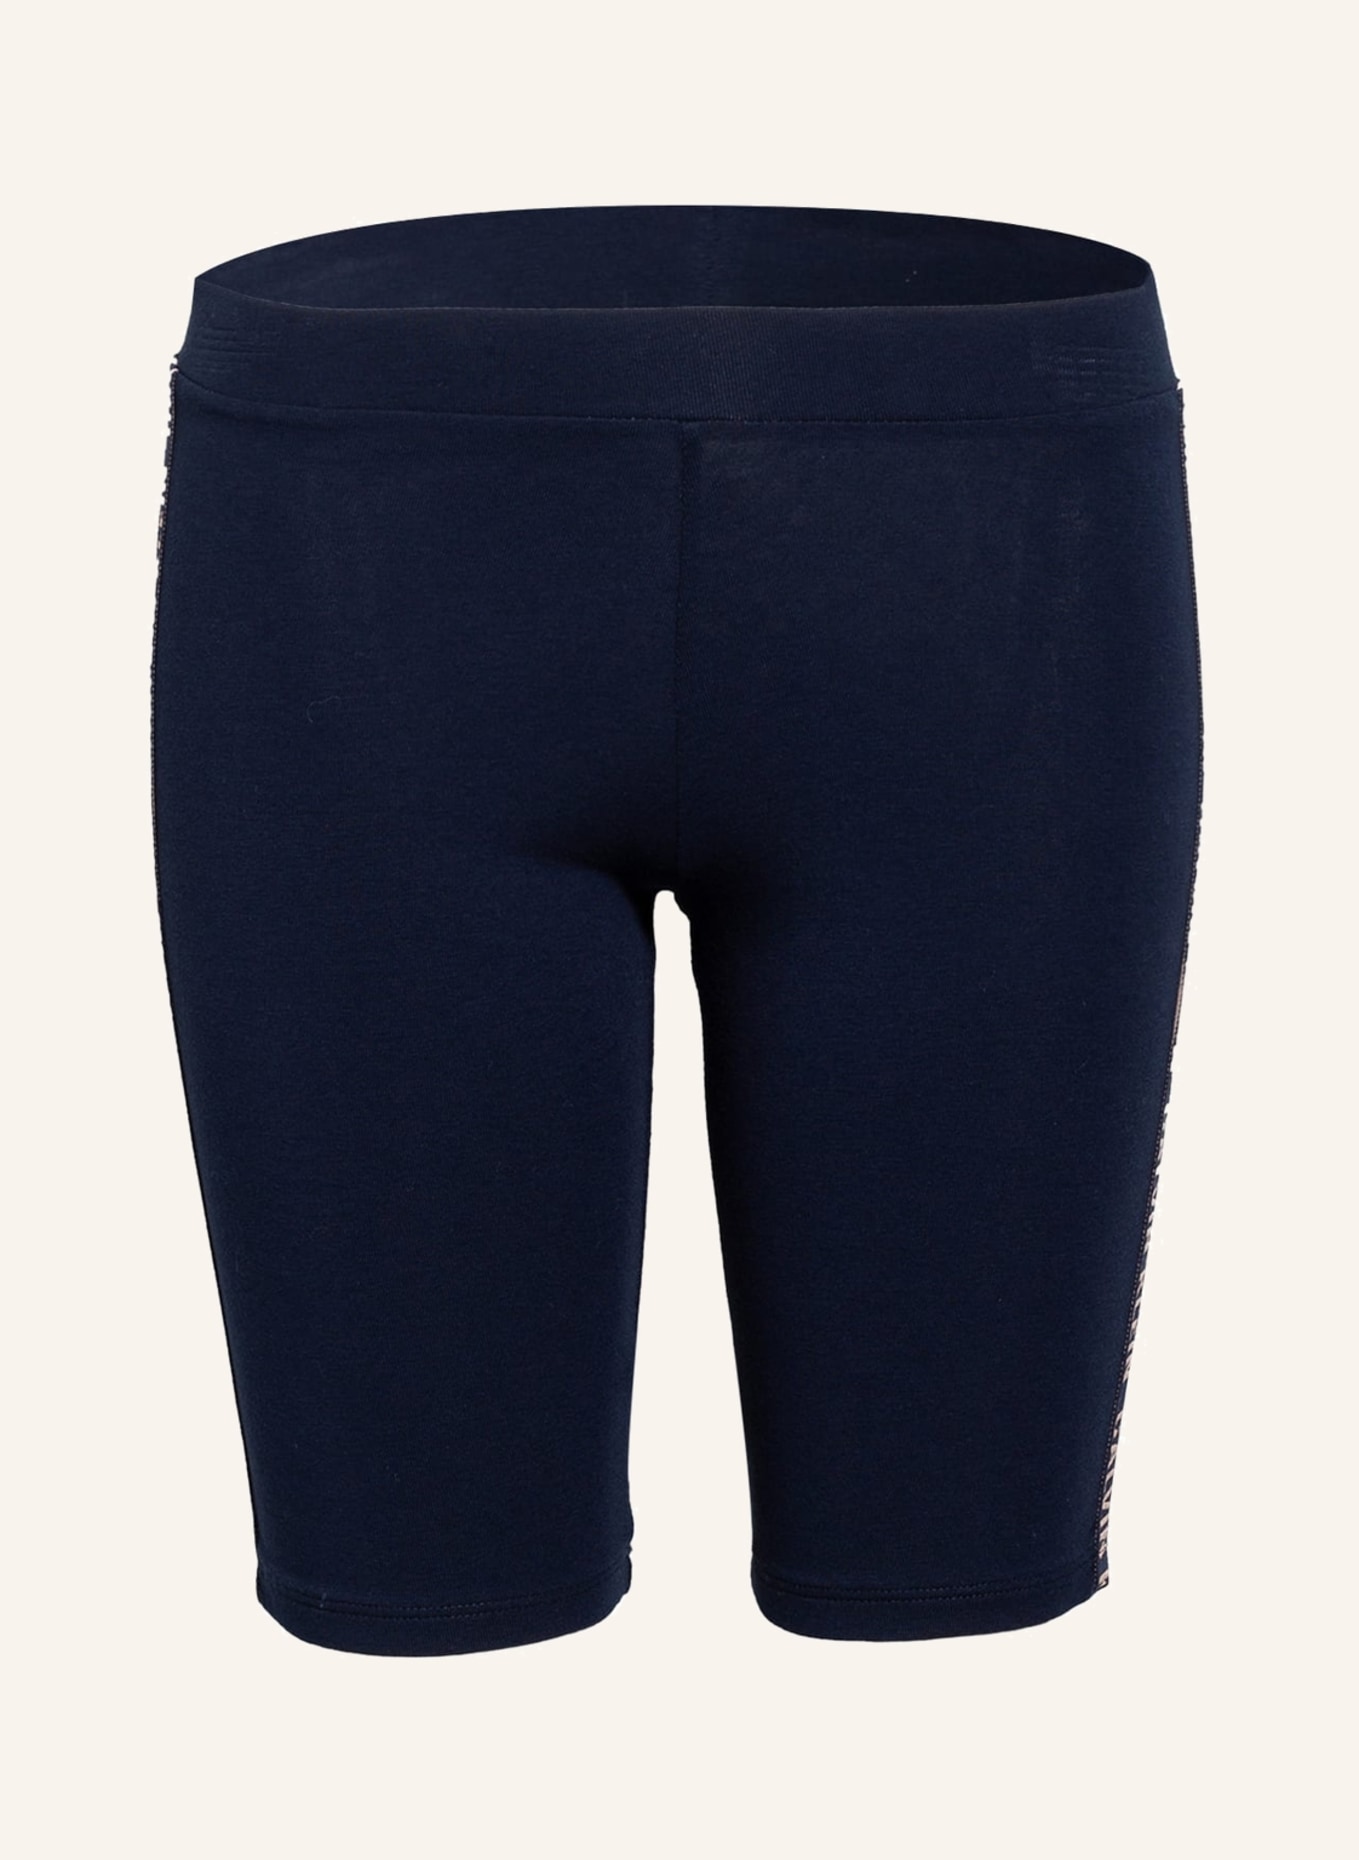 Calvin Klein Radlerhose mit Galonstreifen in dunkelblau | Shorts